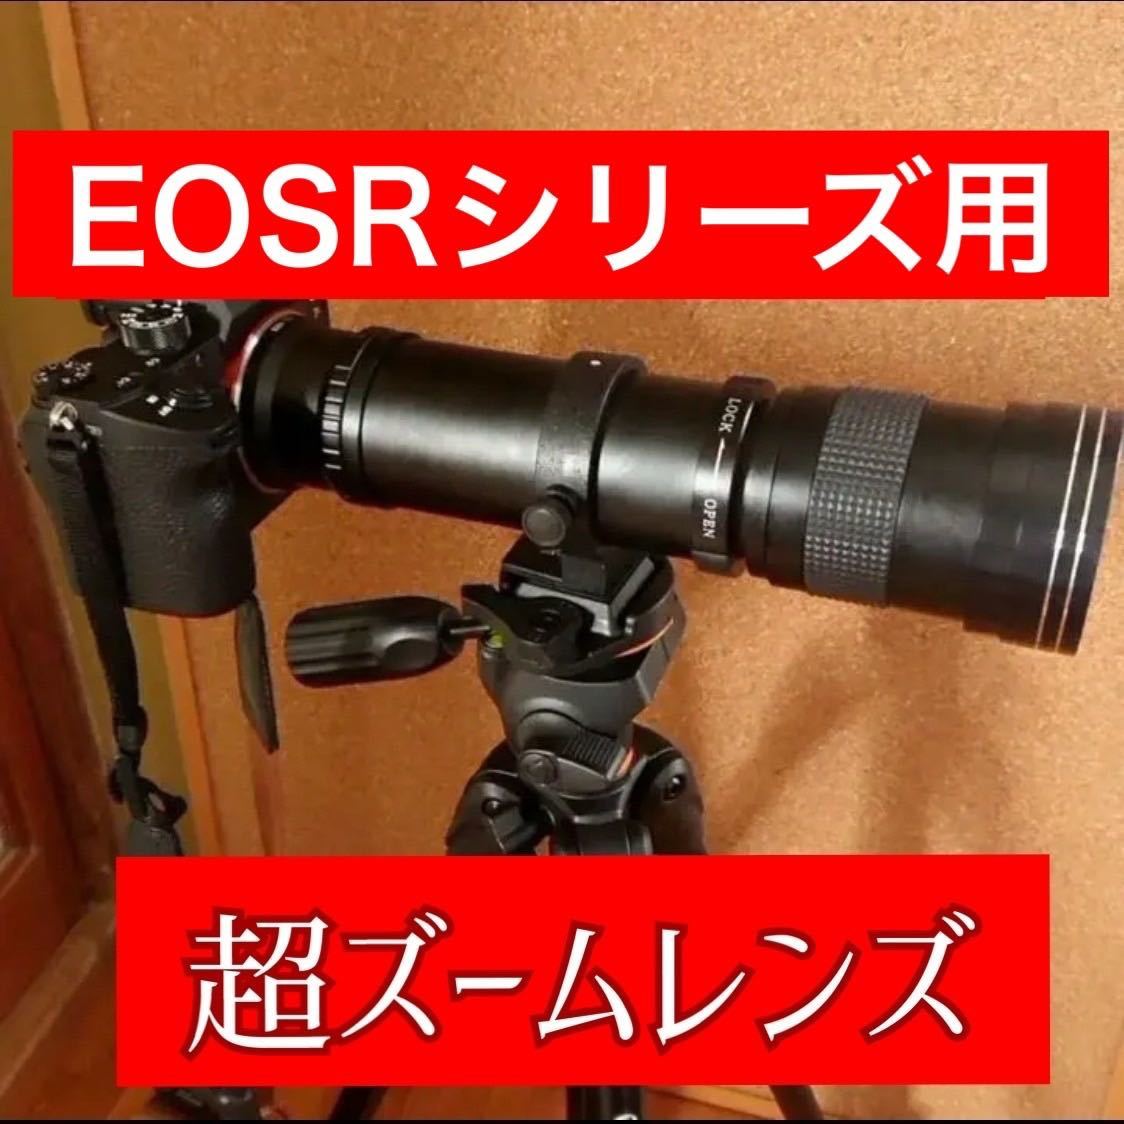 1600mmまでズーム可能！超超超望遠レンズ！Canon EOSRシリーズ対応！美品！綺麗！おすすめ！